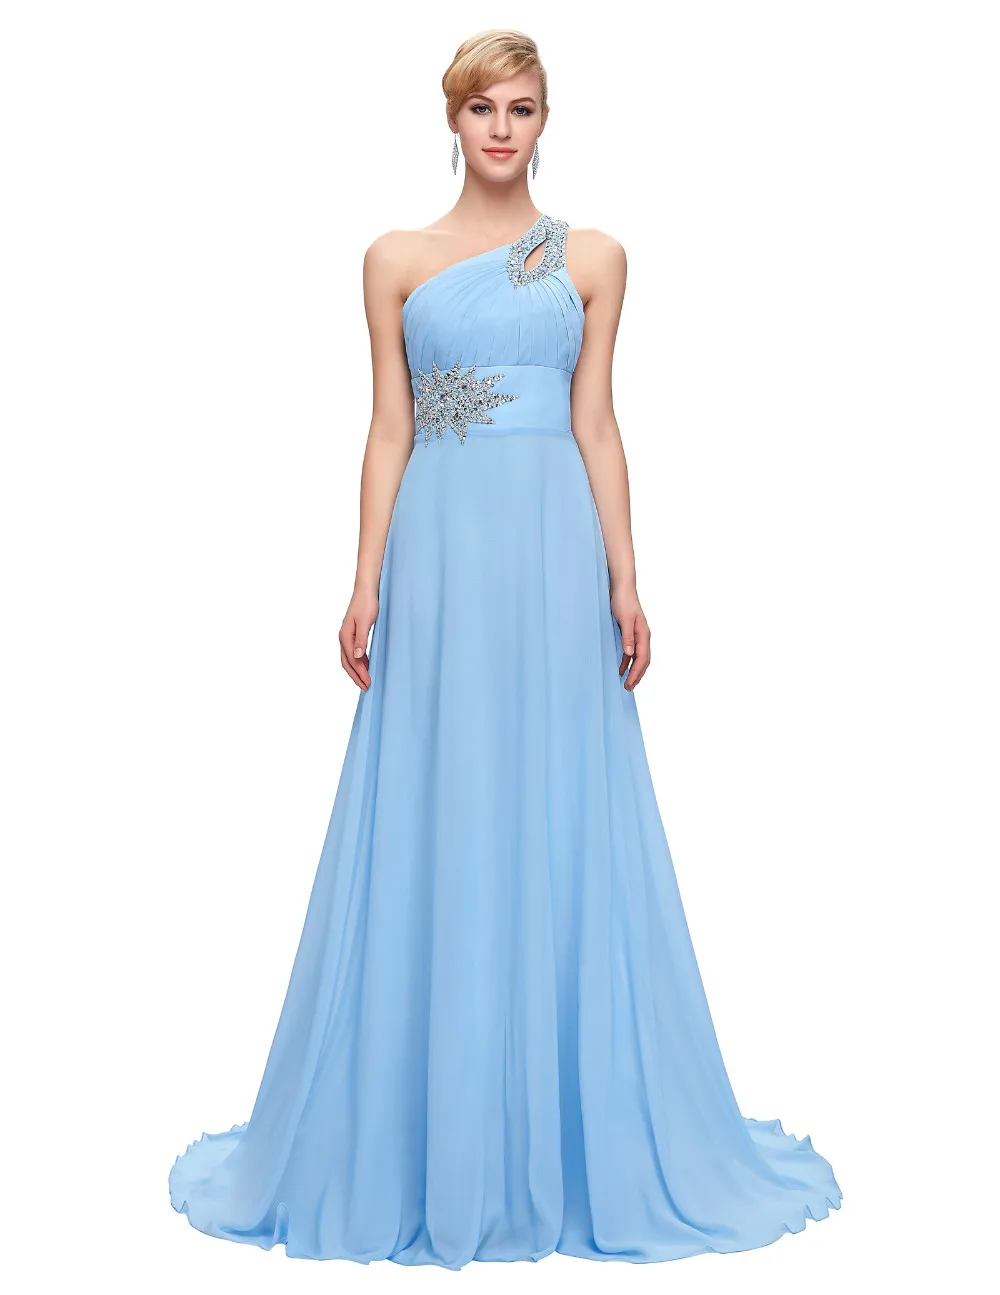 Elegant One Shoulder Long Bridesmaid Dress | Uniqistic.com